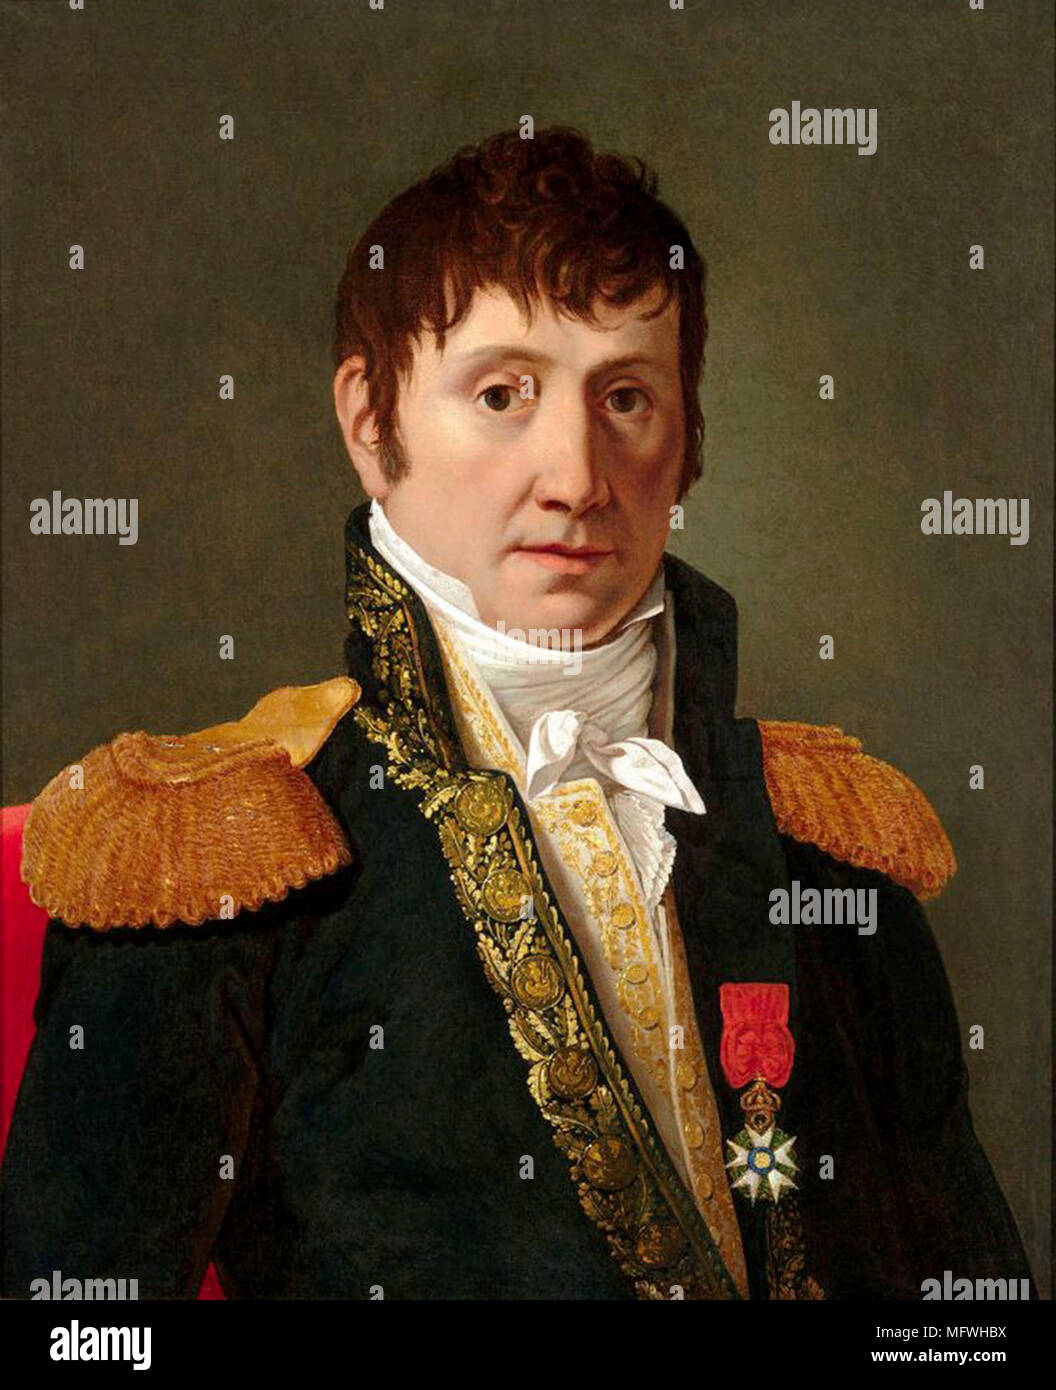 Général maréchal Jean-de-Dieu Soult, duc de Dalmatie, (1769 - 1851) Français Général et homme d'État, nommé maréchal de l'Empire en 1804 et souvent appelé le Maréchal Soult. Le duc a également servi trois fois en tant que président du Conseil des ministres, ou premier ministre de la France. Banque D'Images